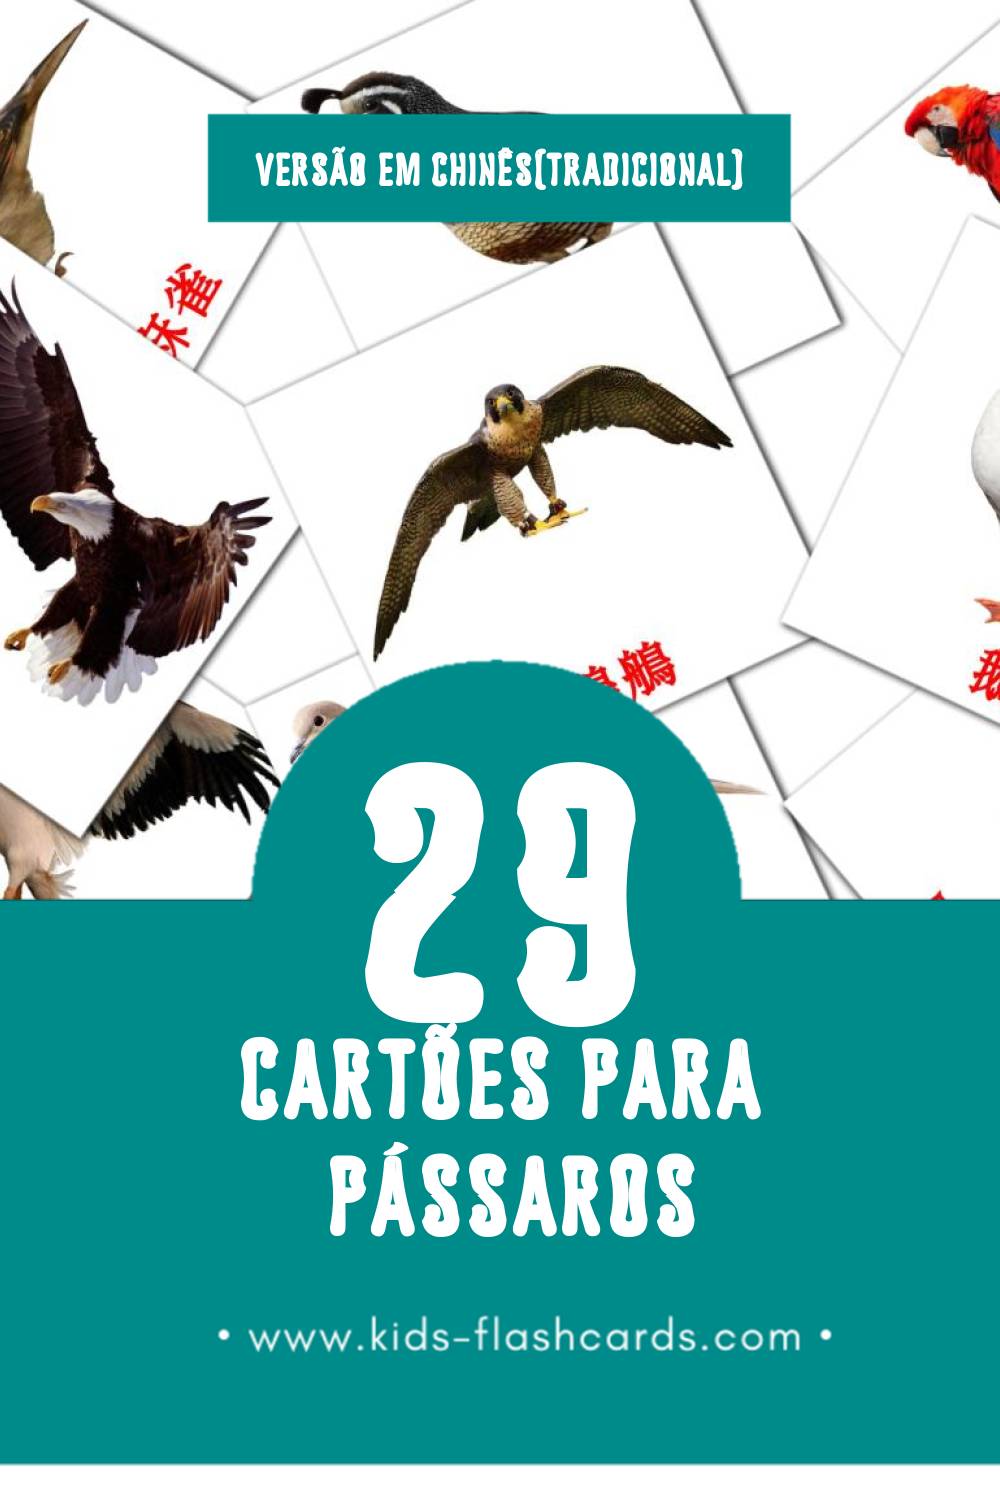 Flashcards de 鳥兒 Visuais para Toddlers (29 cartões em Chinês(tradicional))